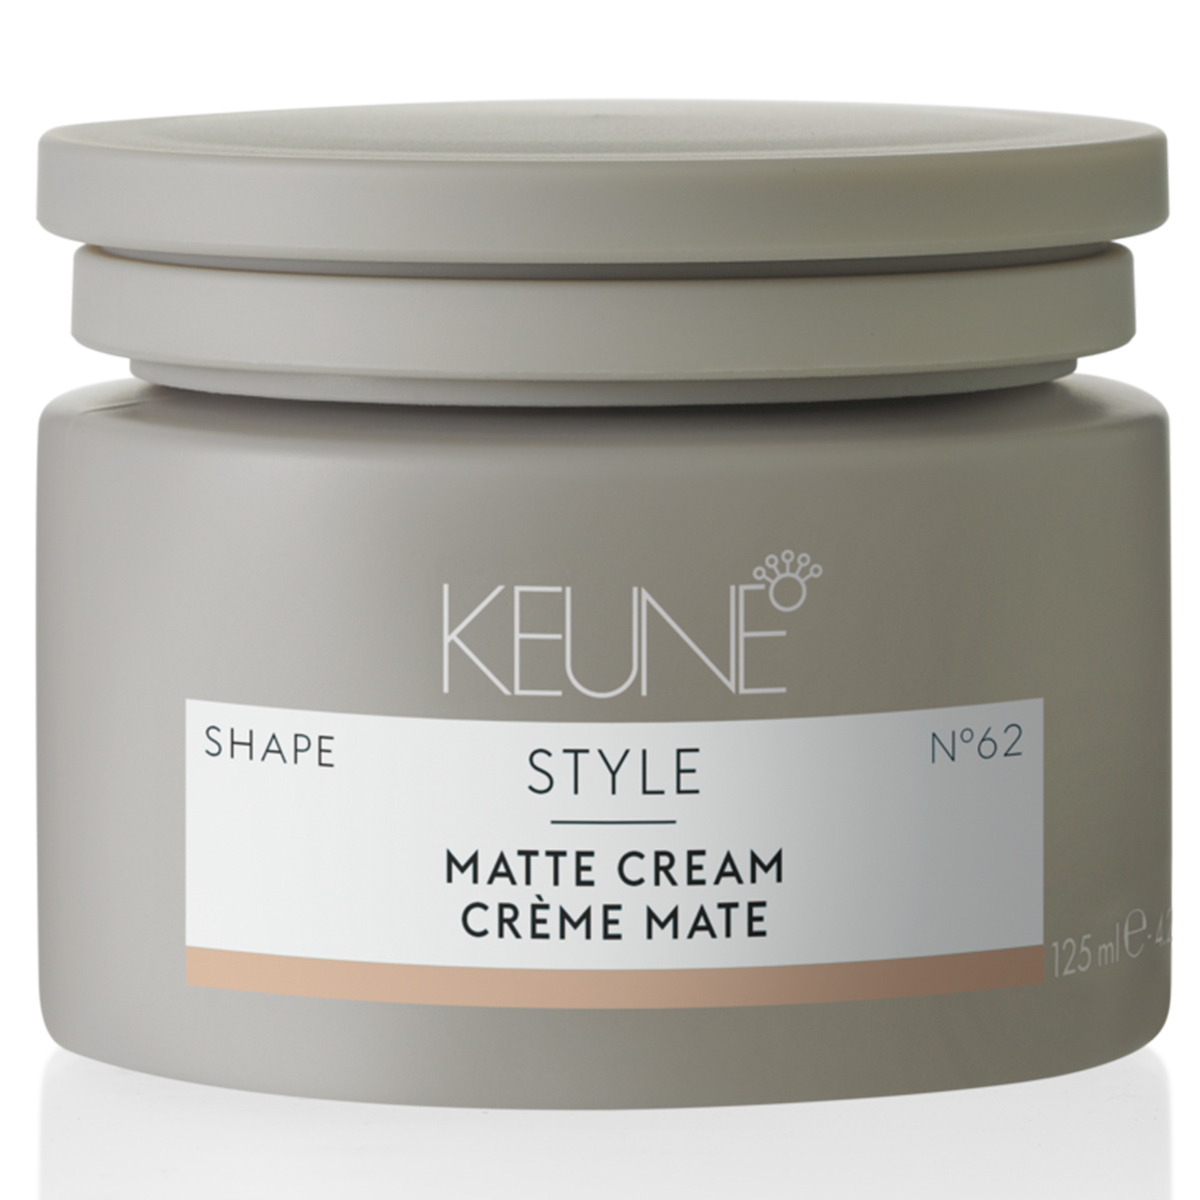 Keune Матирующий крем средней фиксации Matte Cream №62, 125 мл (Keune, Style) матирующий крем для волос keune style matte cream 75 мл